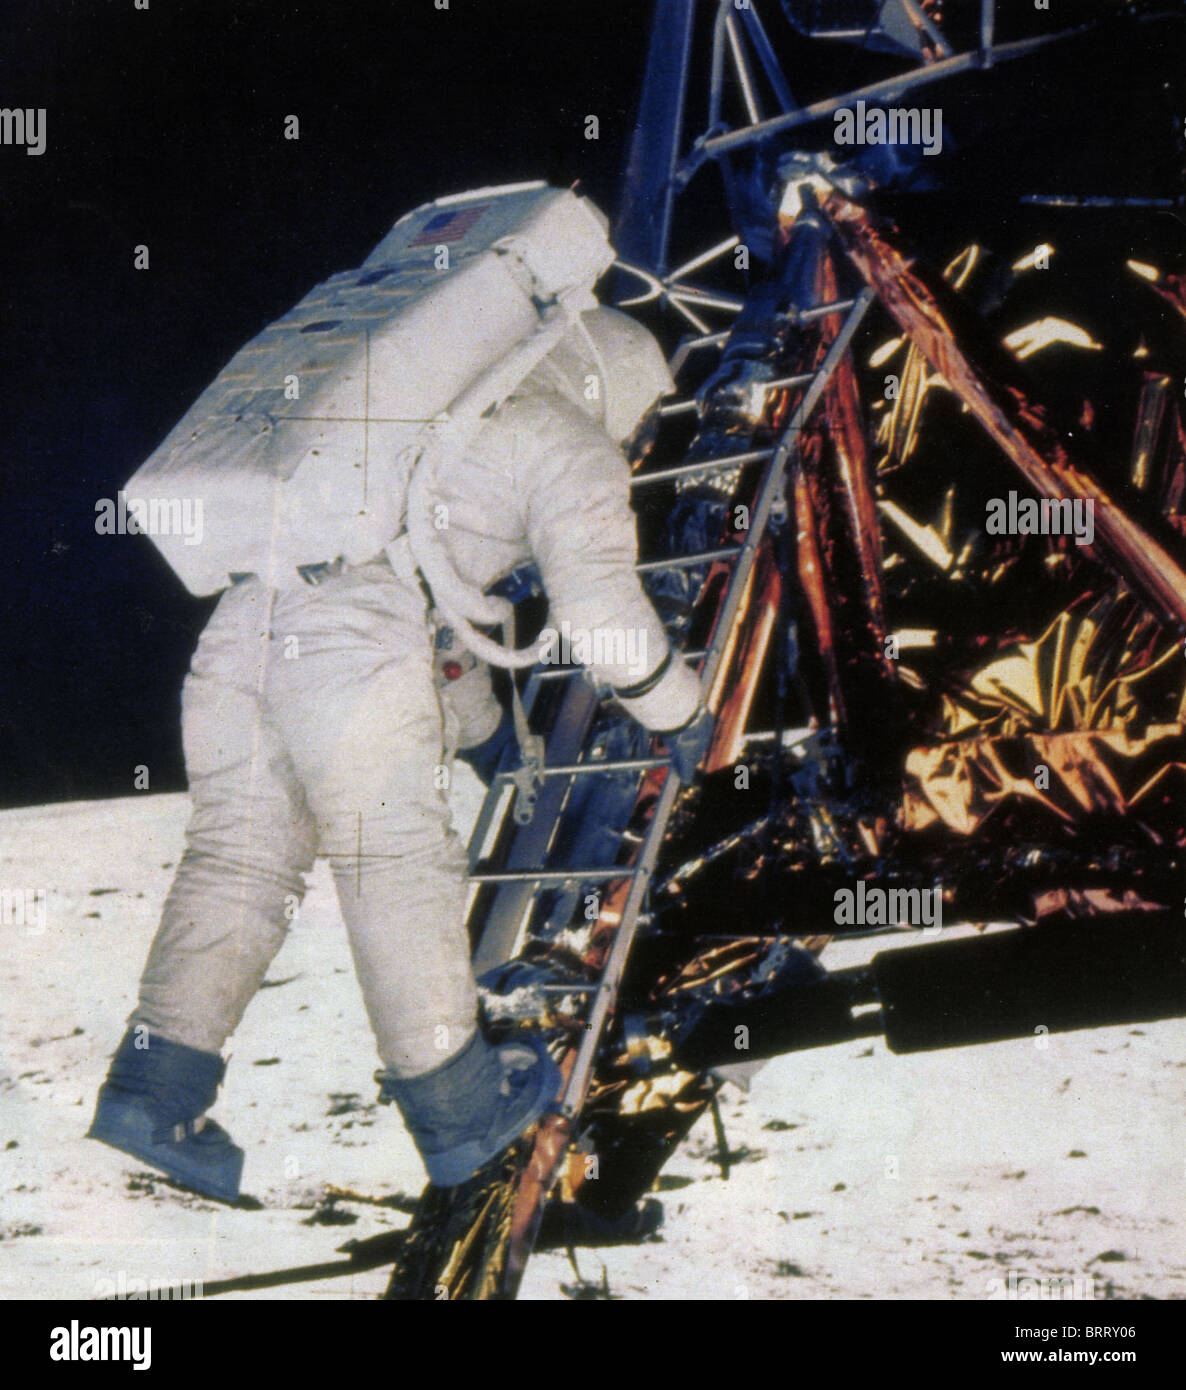 NEIL ARMSTRONG a quitté le module lunaire Apollo au cours de l'atterrissage d'Apollo 11 en juillet 1969 Banque D'Images